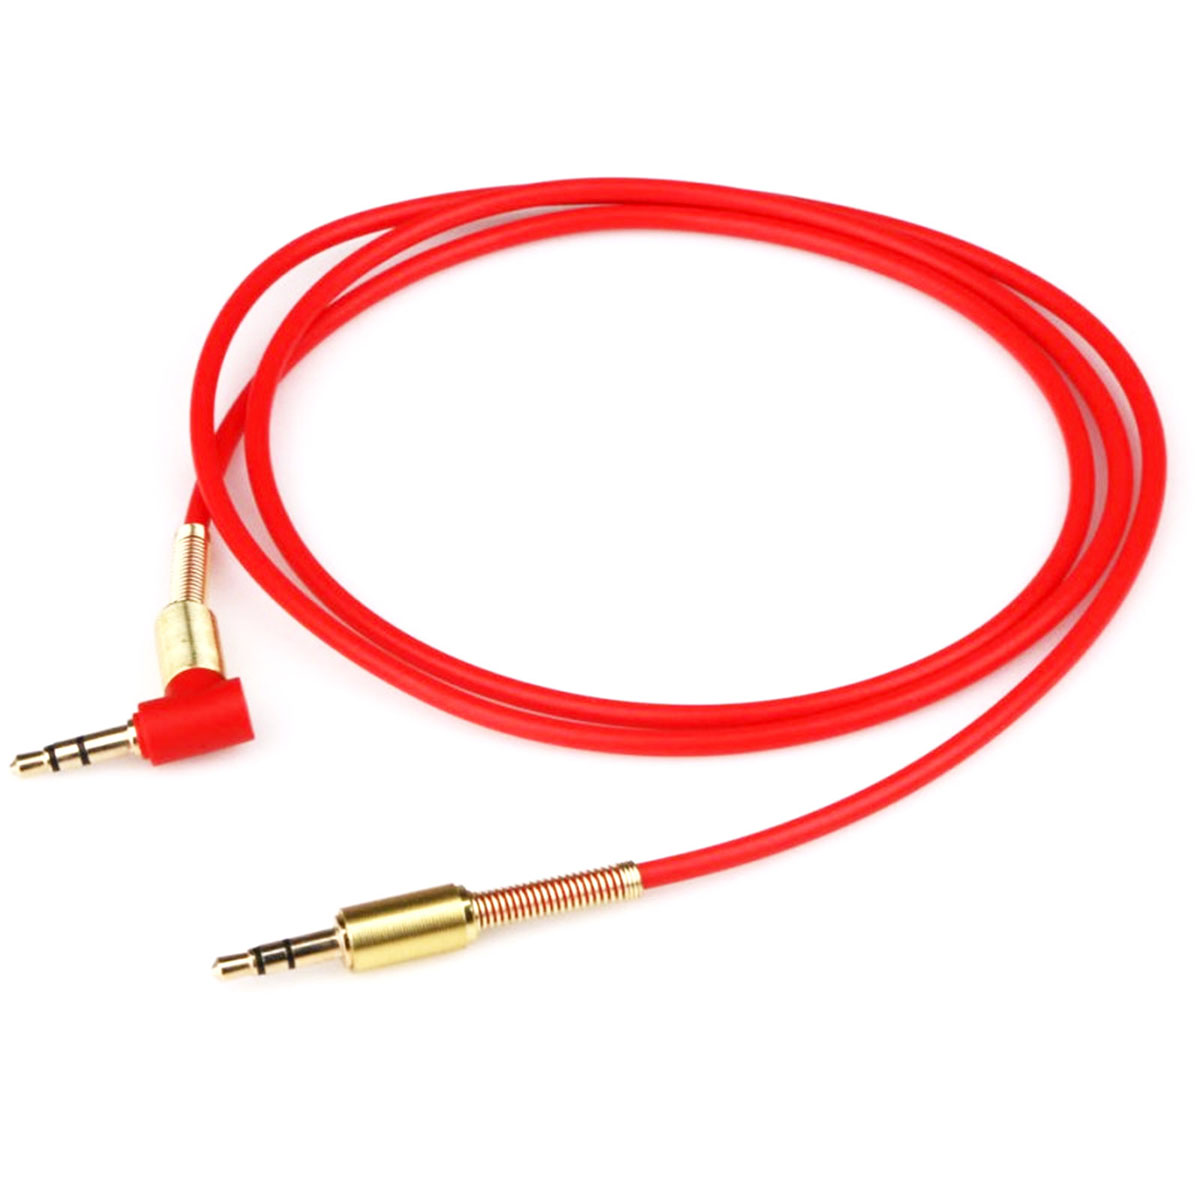 AUX кабель "KY-118", угловой, длина 1 метр, прорезиненный, с позолоченными разъемами Jack 3.5, цвет красный